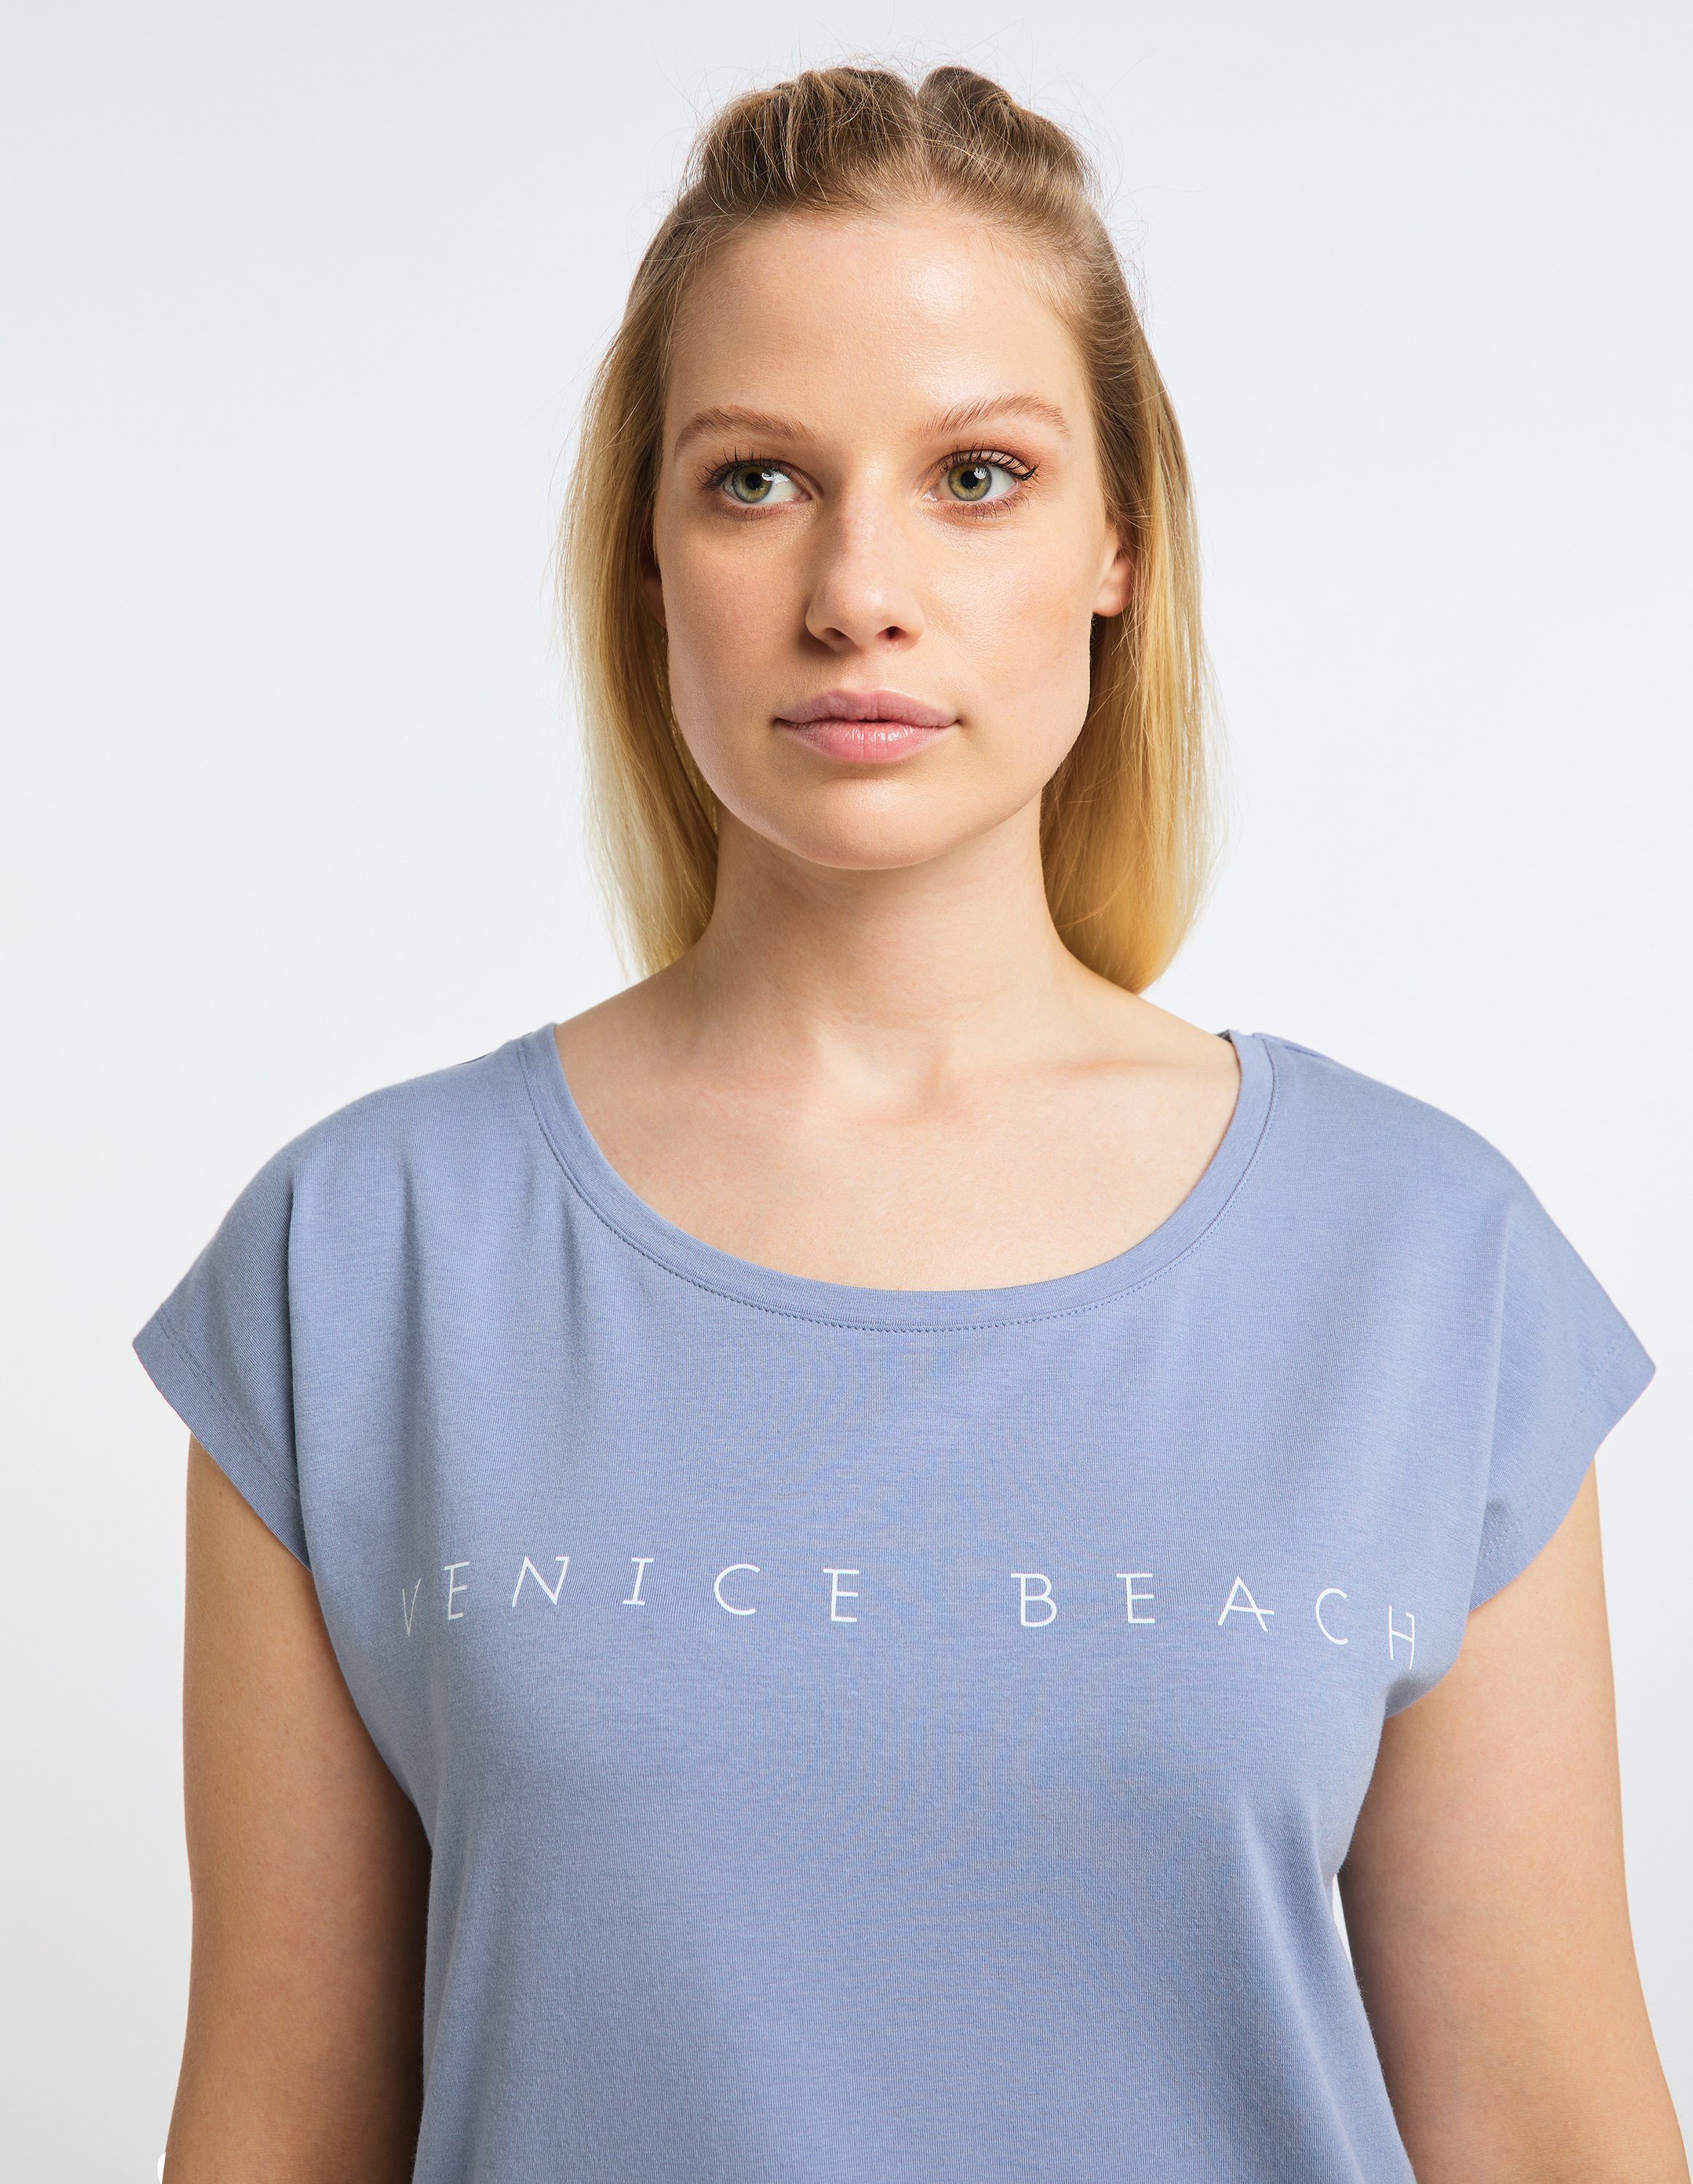 Venice Beach T-Shirt Wonder blue delft VB T-Shirt